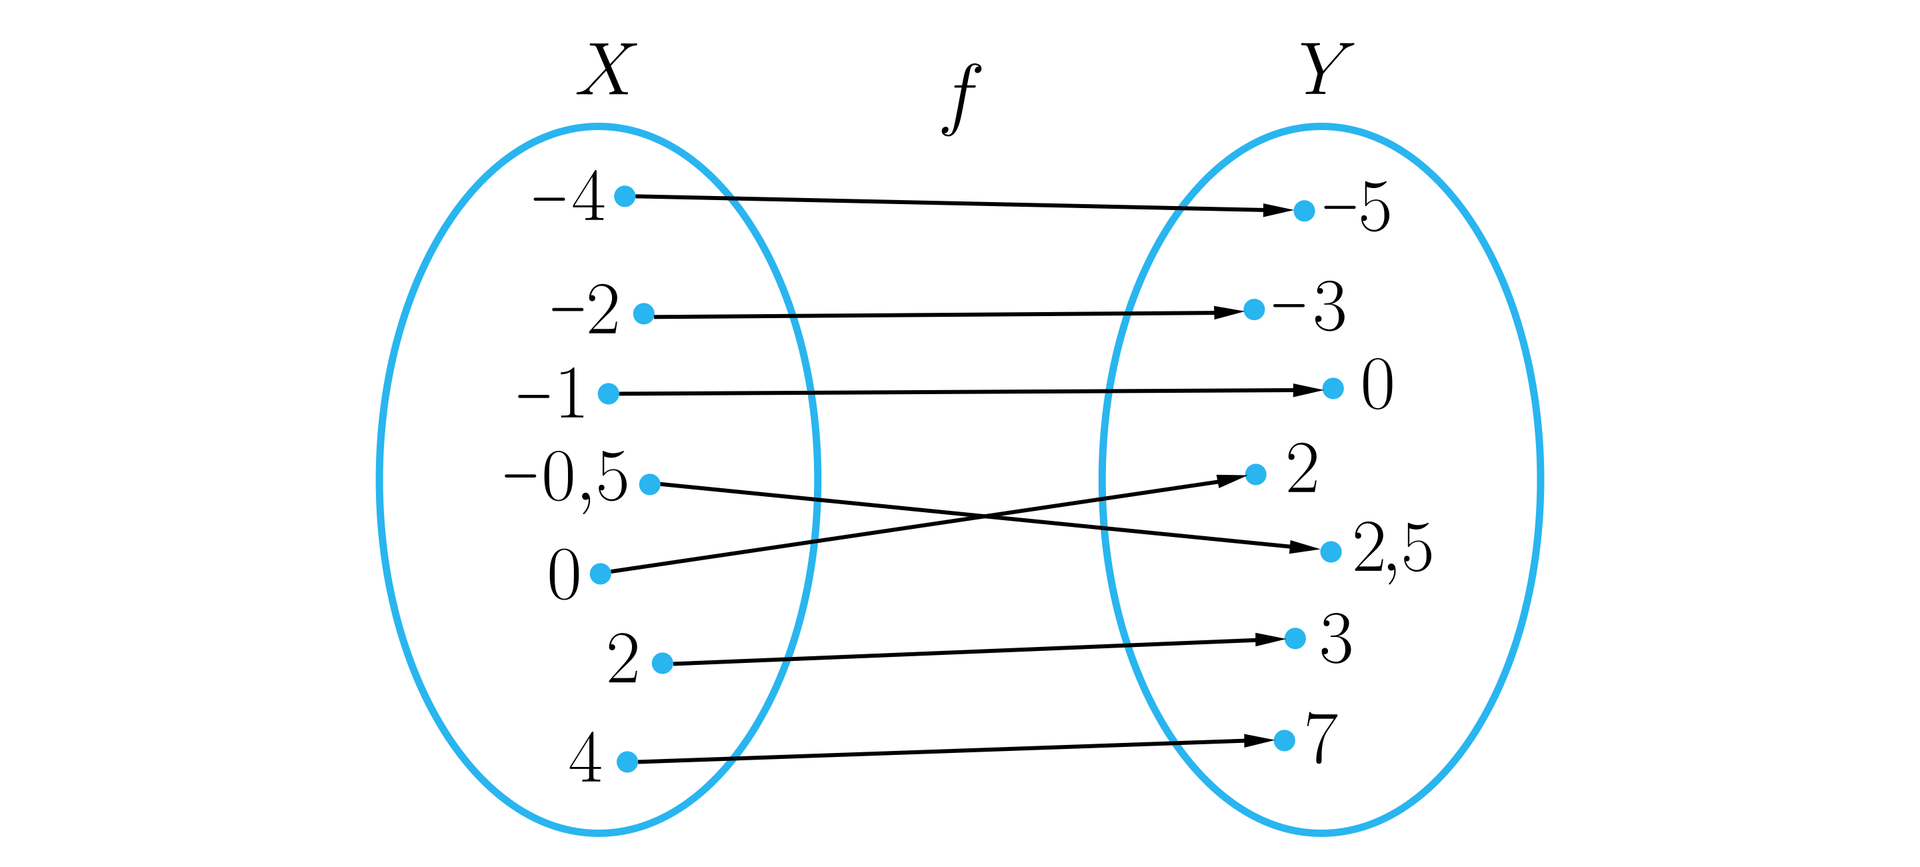 Graf składa się z dwóch pionowo ustawionych elips reprezentujących odpowiednio: lewa zbiór X, prawa zbiór Y.  Z liczb będących elementami zbioru X poprowadzone są strzałki z grotami skierowanymi do elementów ze zbioru Y. Nad strzałkami widnieje litera „f” oznaczająca funkcję odwzorowującą zbiór X w zbiór Y. Wszystkie elementy z obu zbiorów mają parę. Pary są następujące: minus 4, minus 5; minus 2, minus 3; minus 1, 0; minus  pięć dziesiątych, dwa i pół; 0, 2; 2, 3; 4, 7.